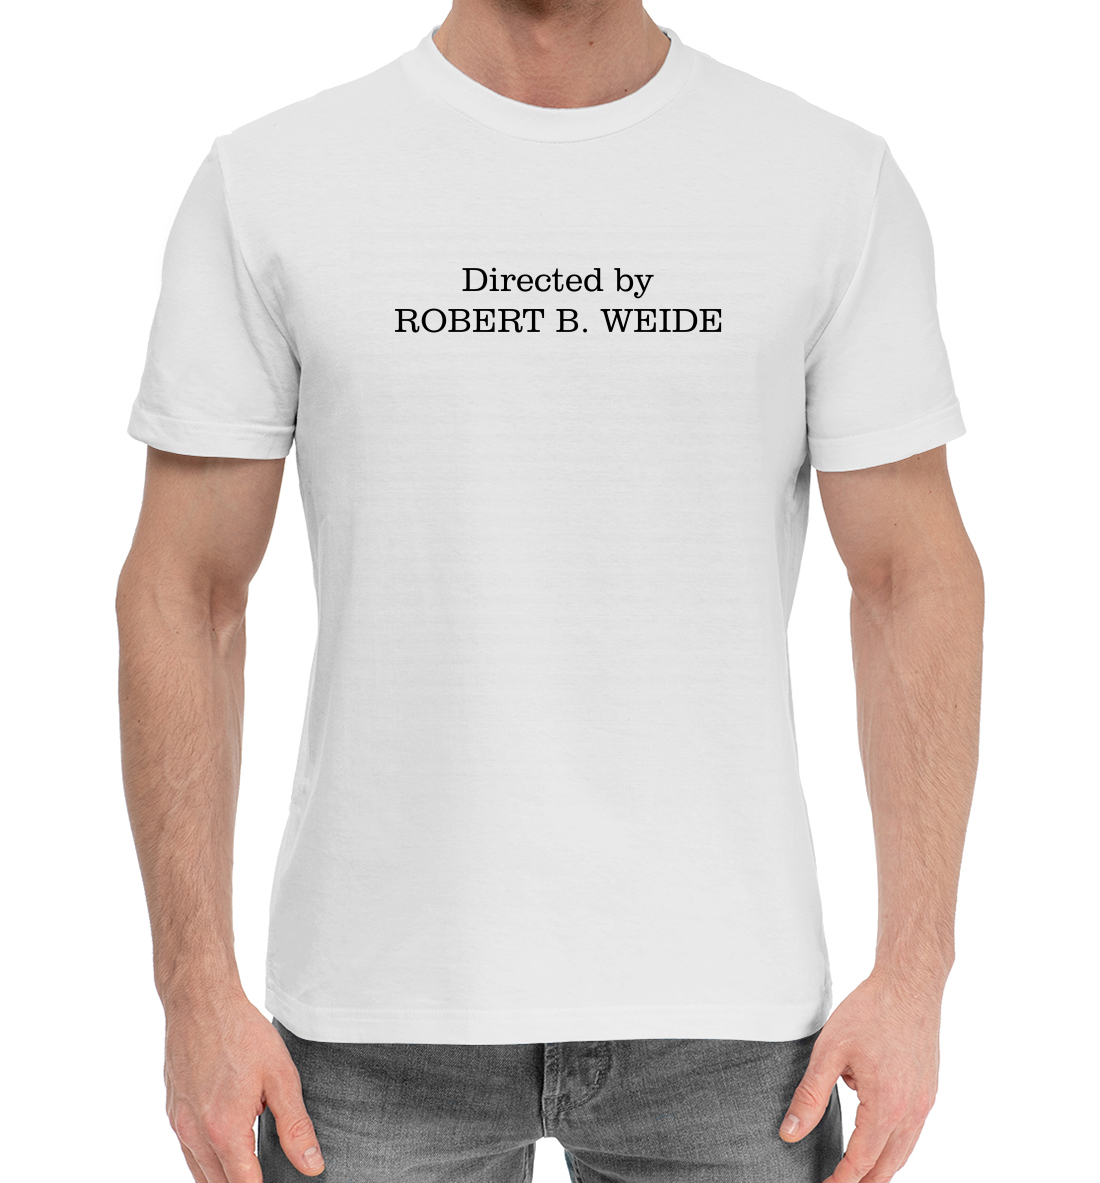 Мужская Хлопковая футболка с надписью Directed by ROBERT B. WEIDE, артикул MEM-878882-hfu-2mp